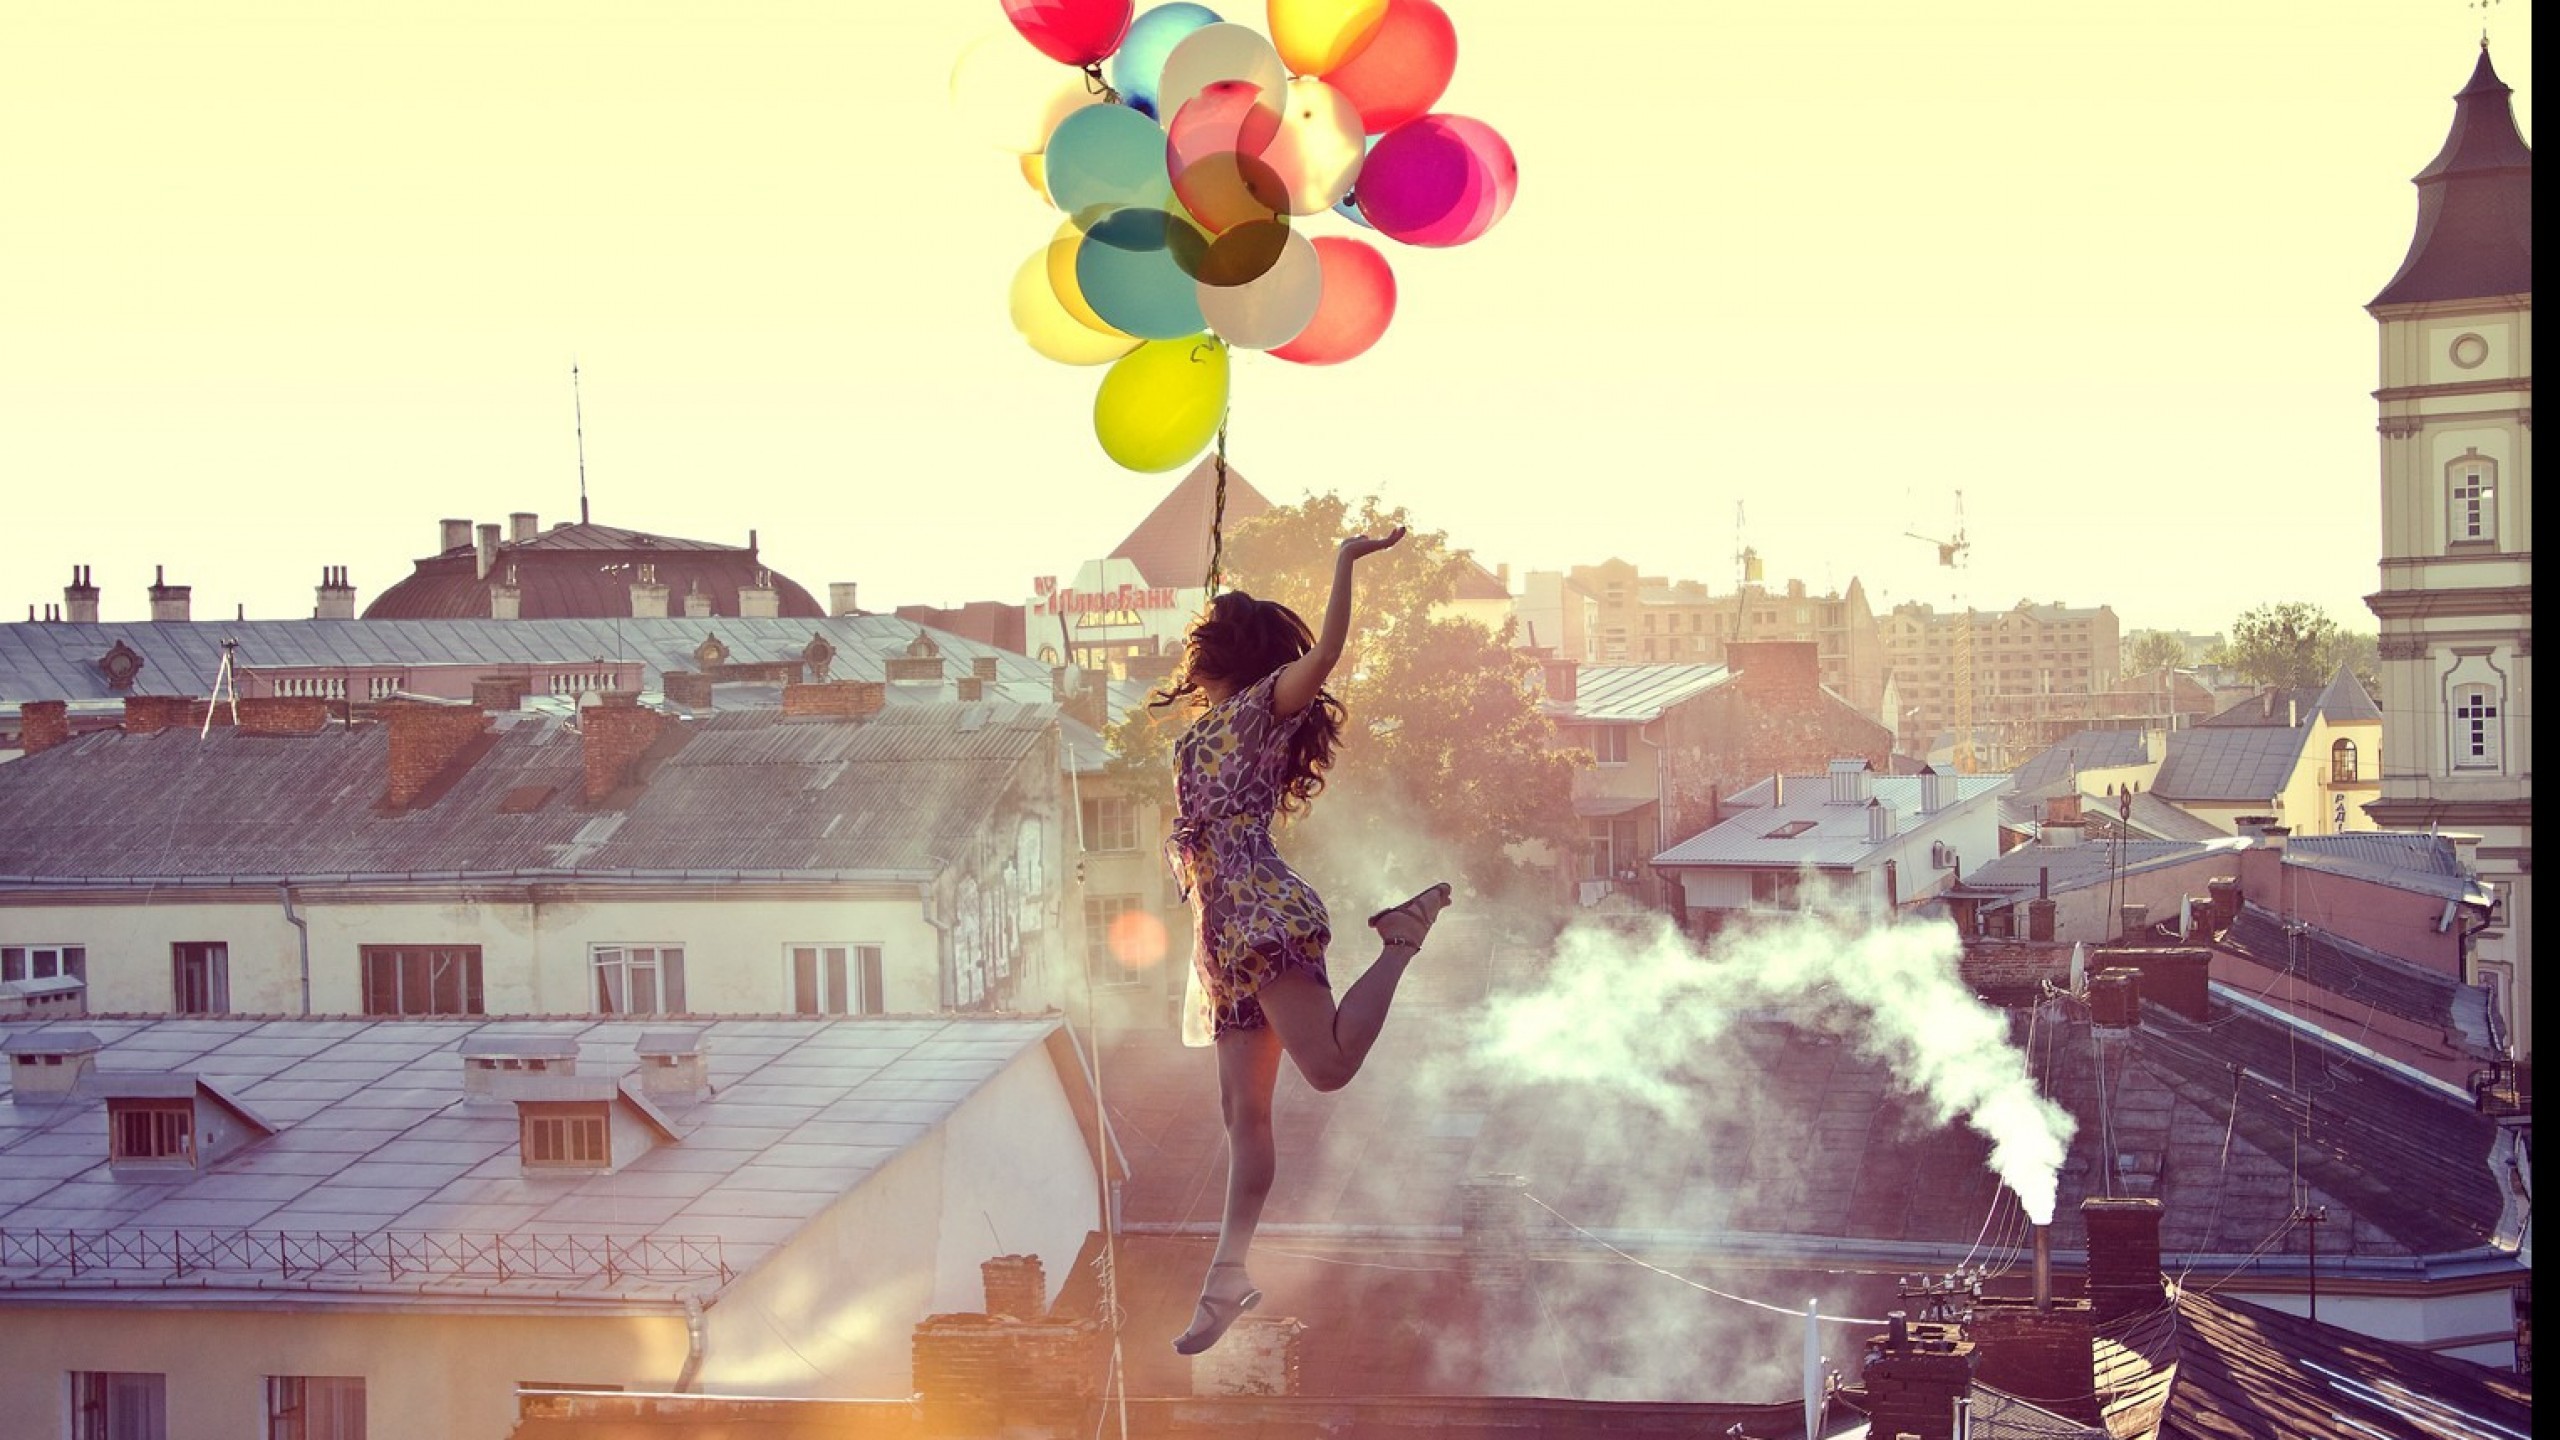 Вспомни и запиши какая деятельность тебя вдохновляет. Девушка с воздушными шарами. Девочка с шариками на крыше. Фотосессия на крыше с шарами. Яркие моменты жизни.